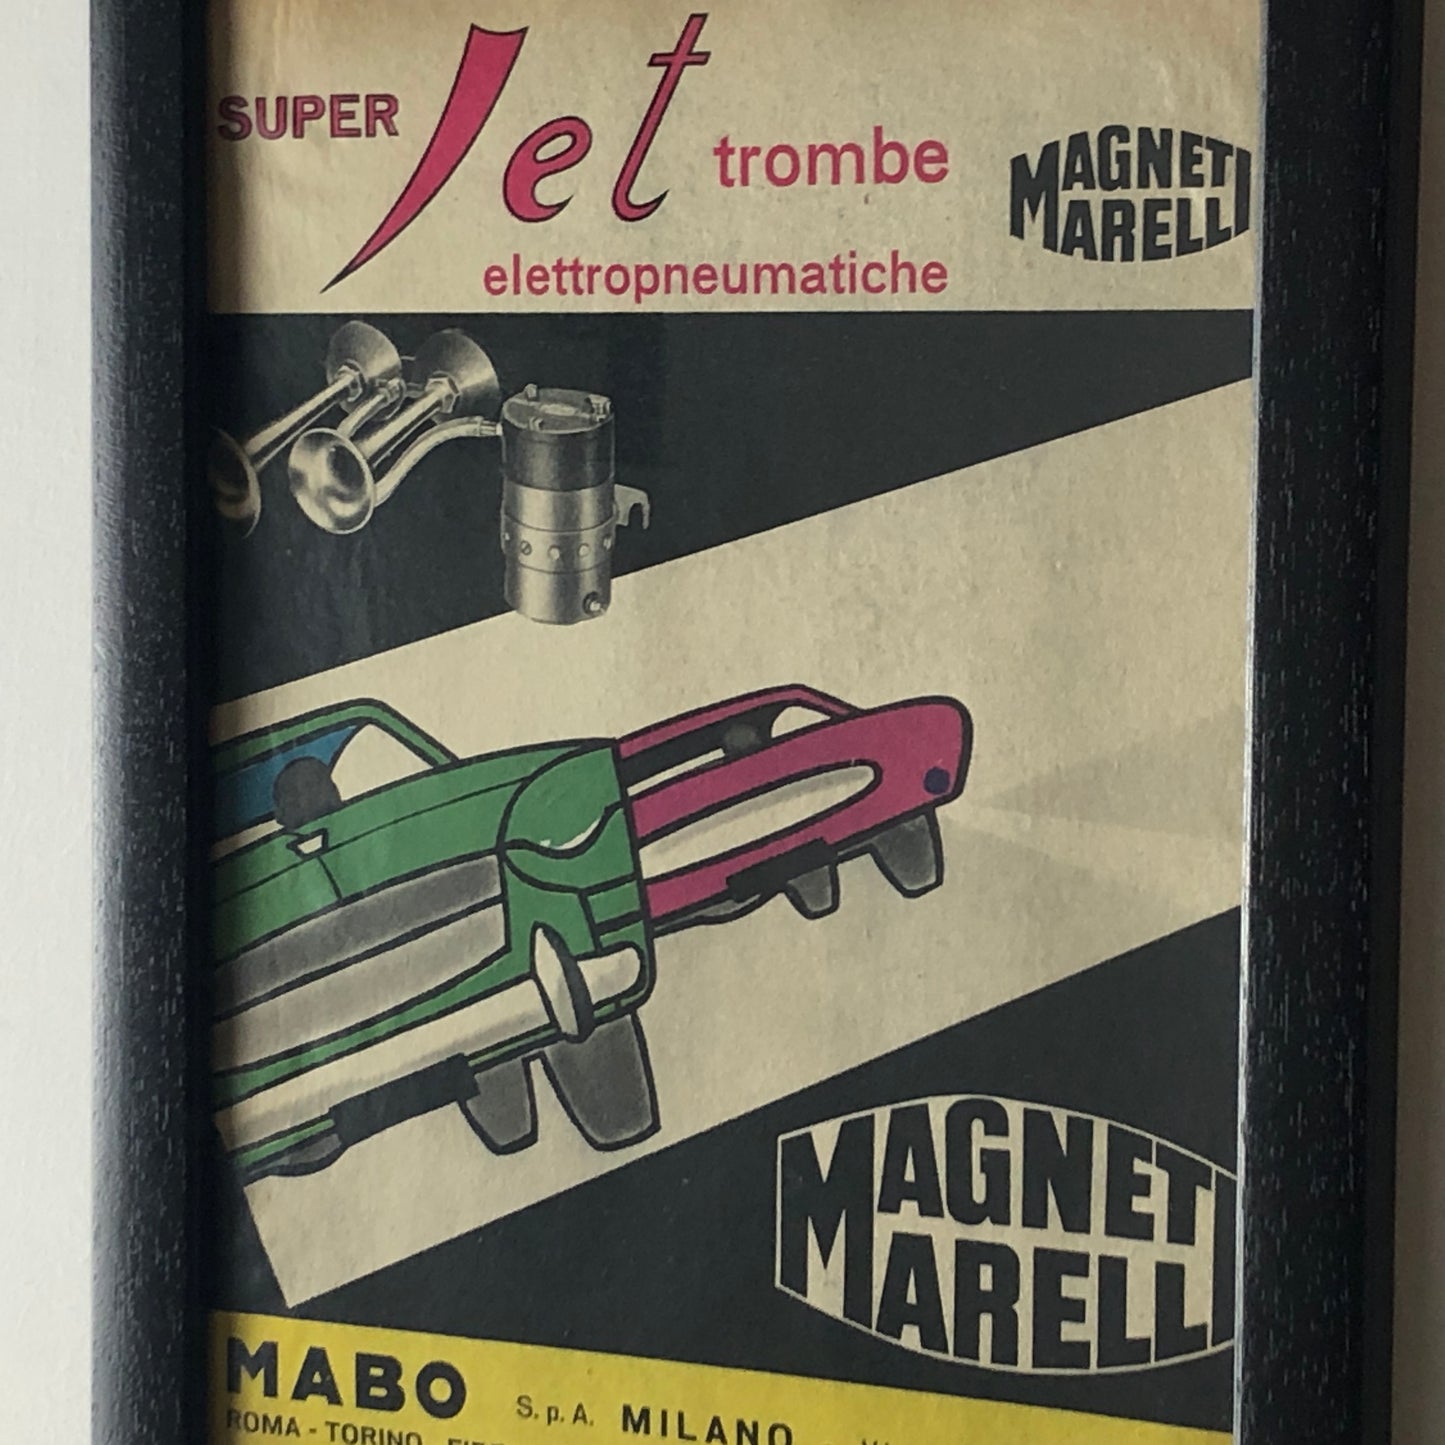 Magneti Marelli, Pubblicità Anno 1960 Magneti Marelli Super Jet Trombe Elettropneumatiche Disegnata dallo Studio Dalla Costa.